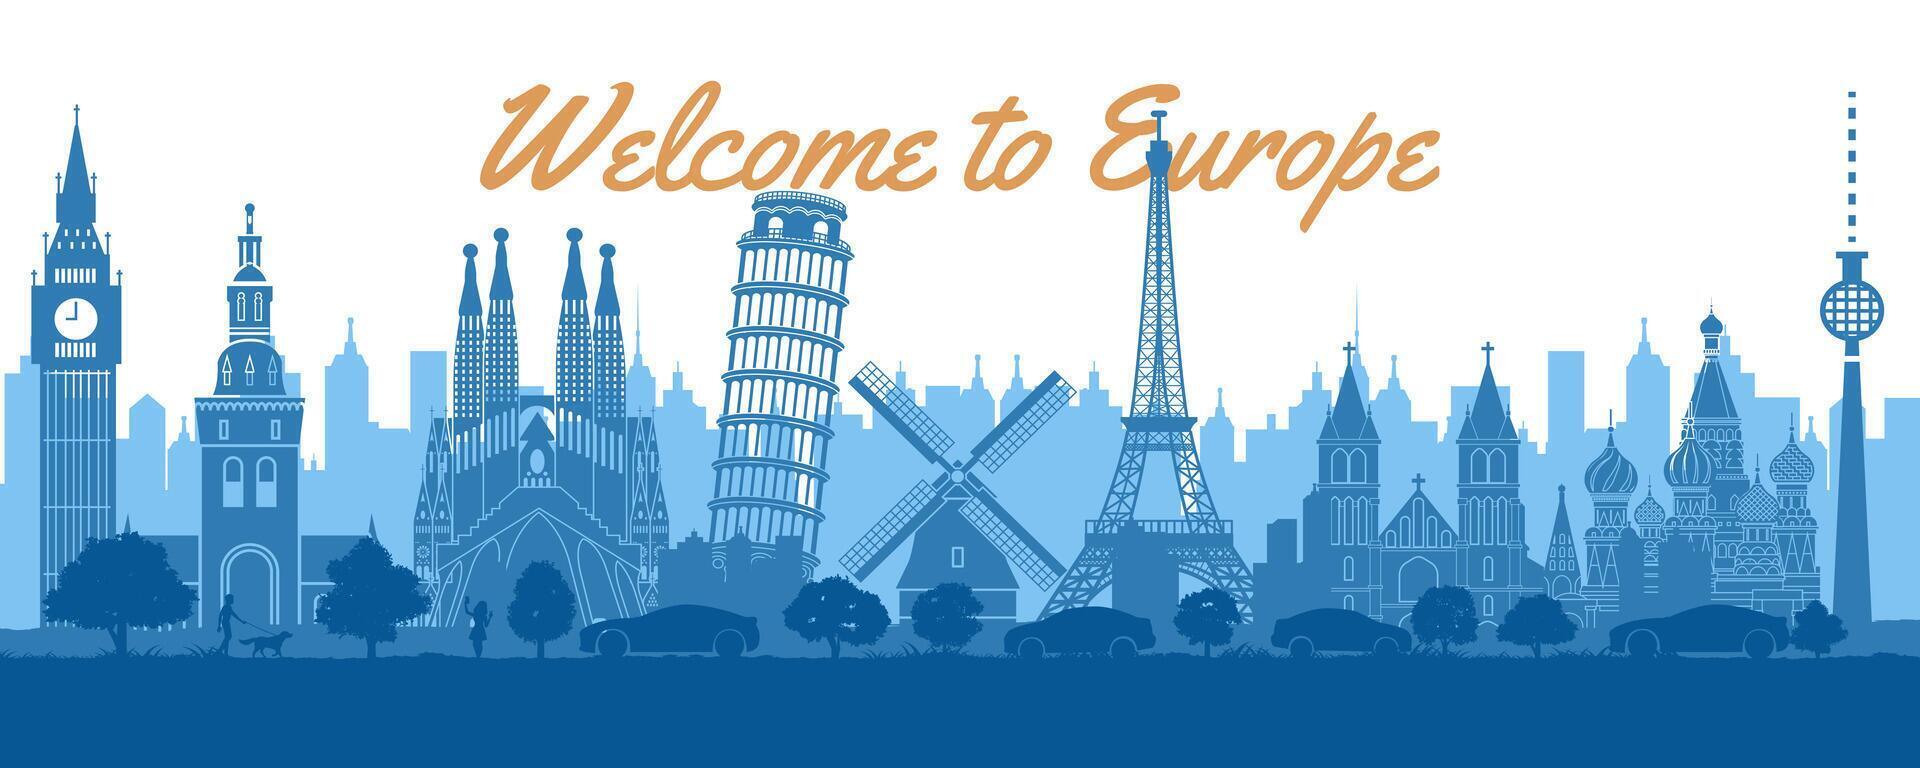 Europa famoso marcos de silhueta estilo com branco e azul cor vetor